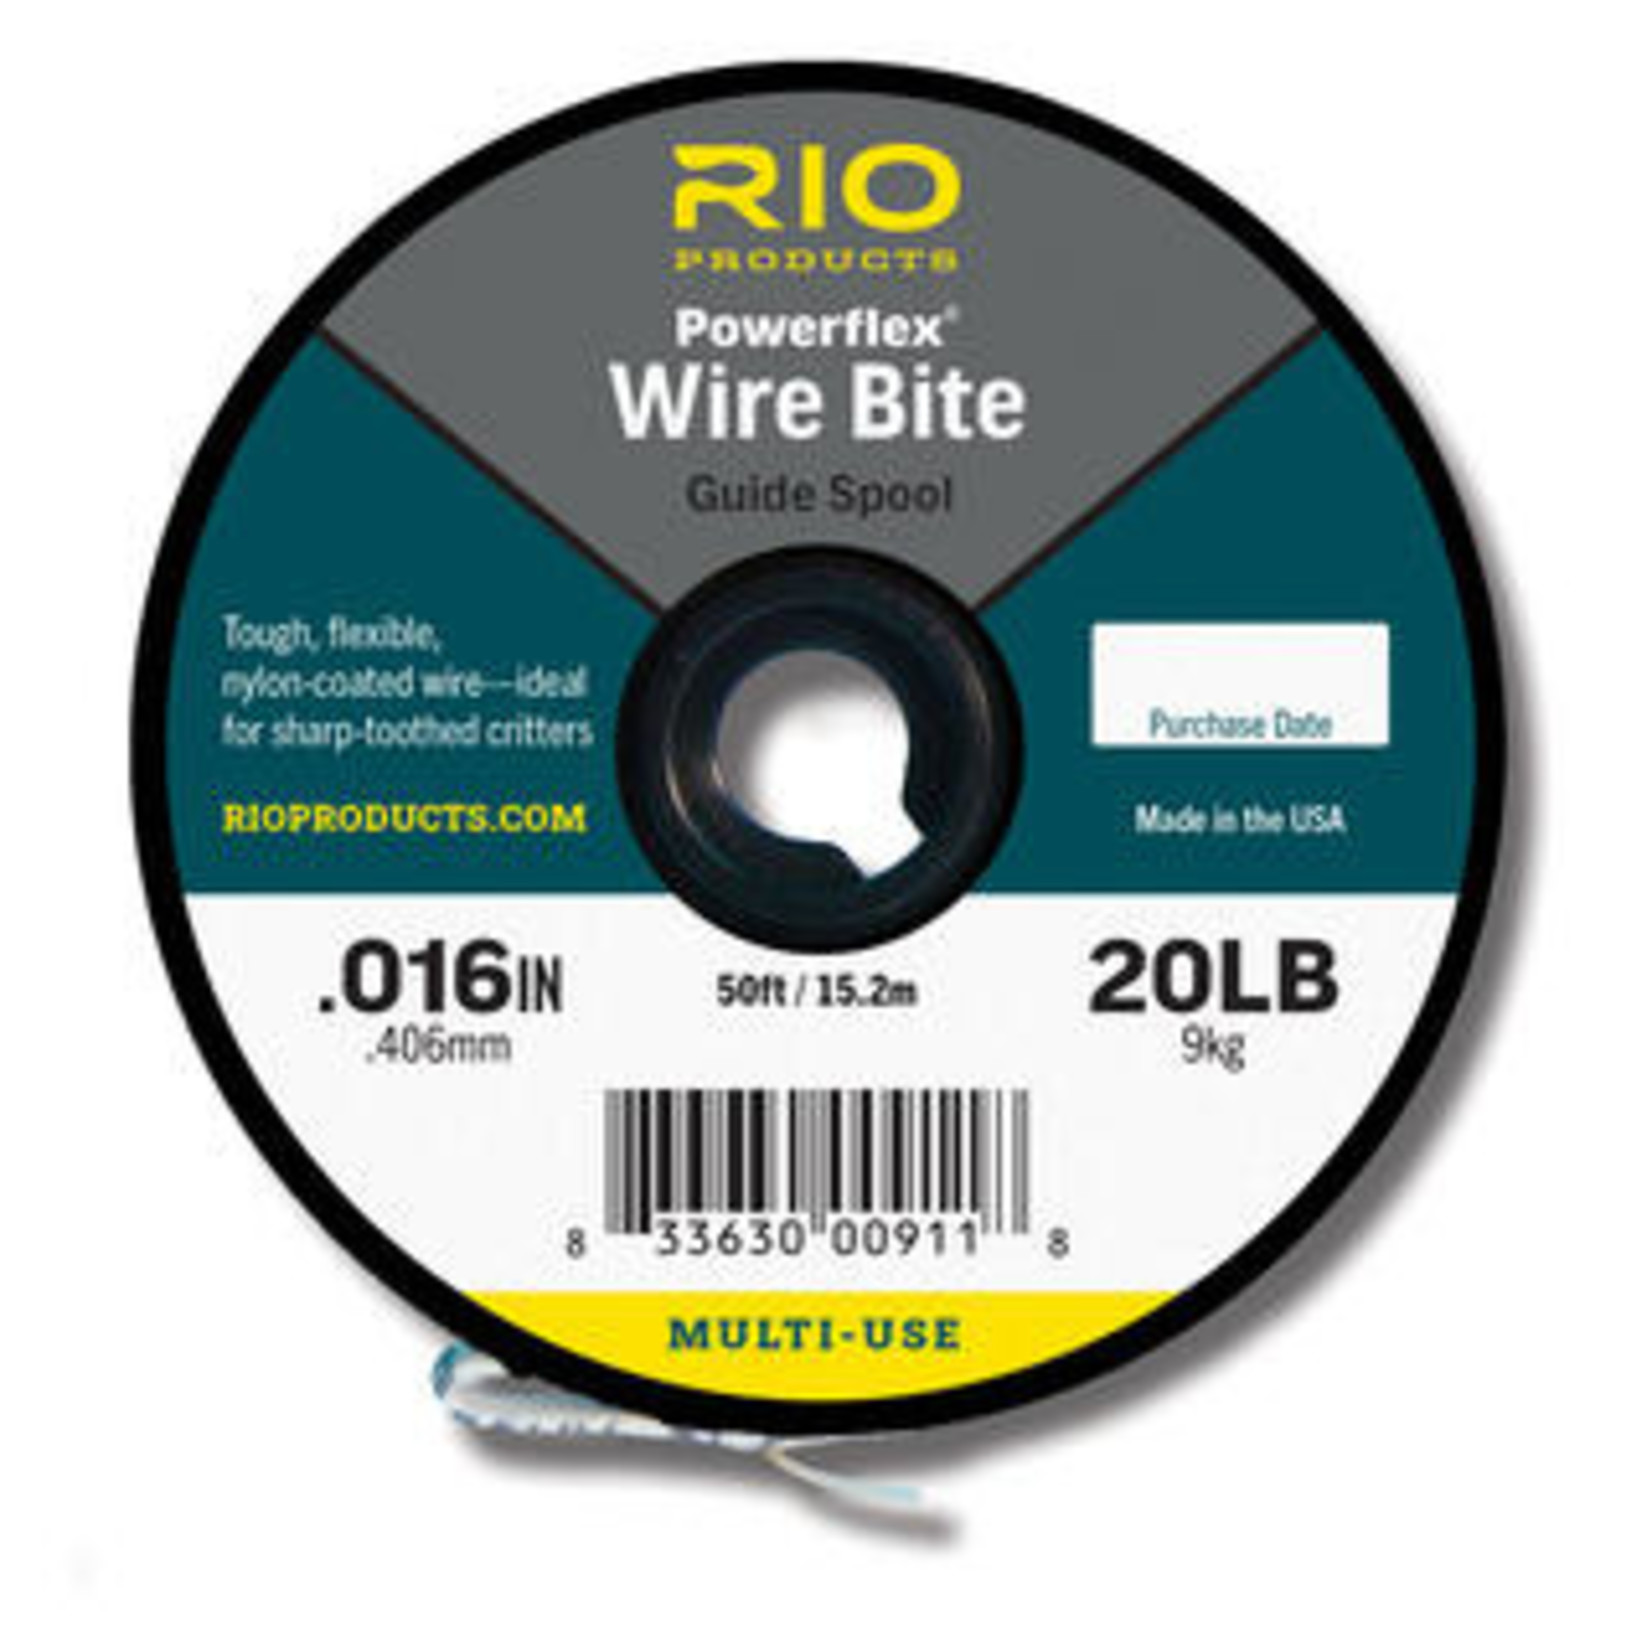 Rio Wire Bite Tippet